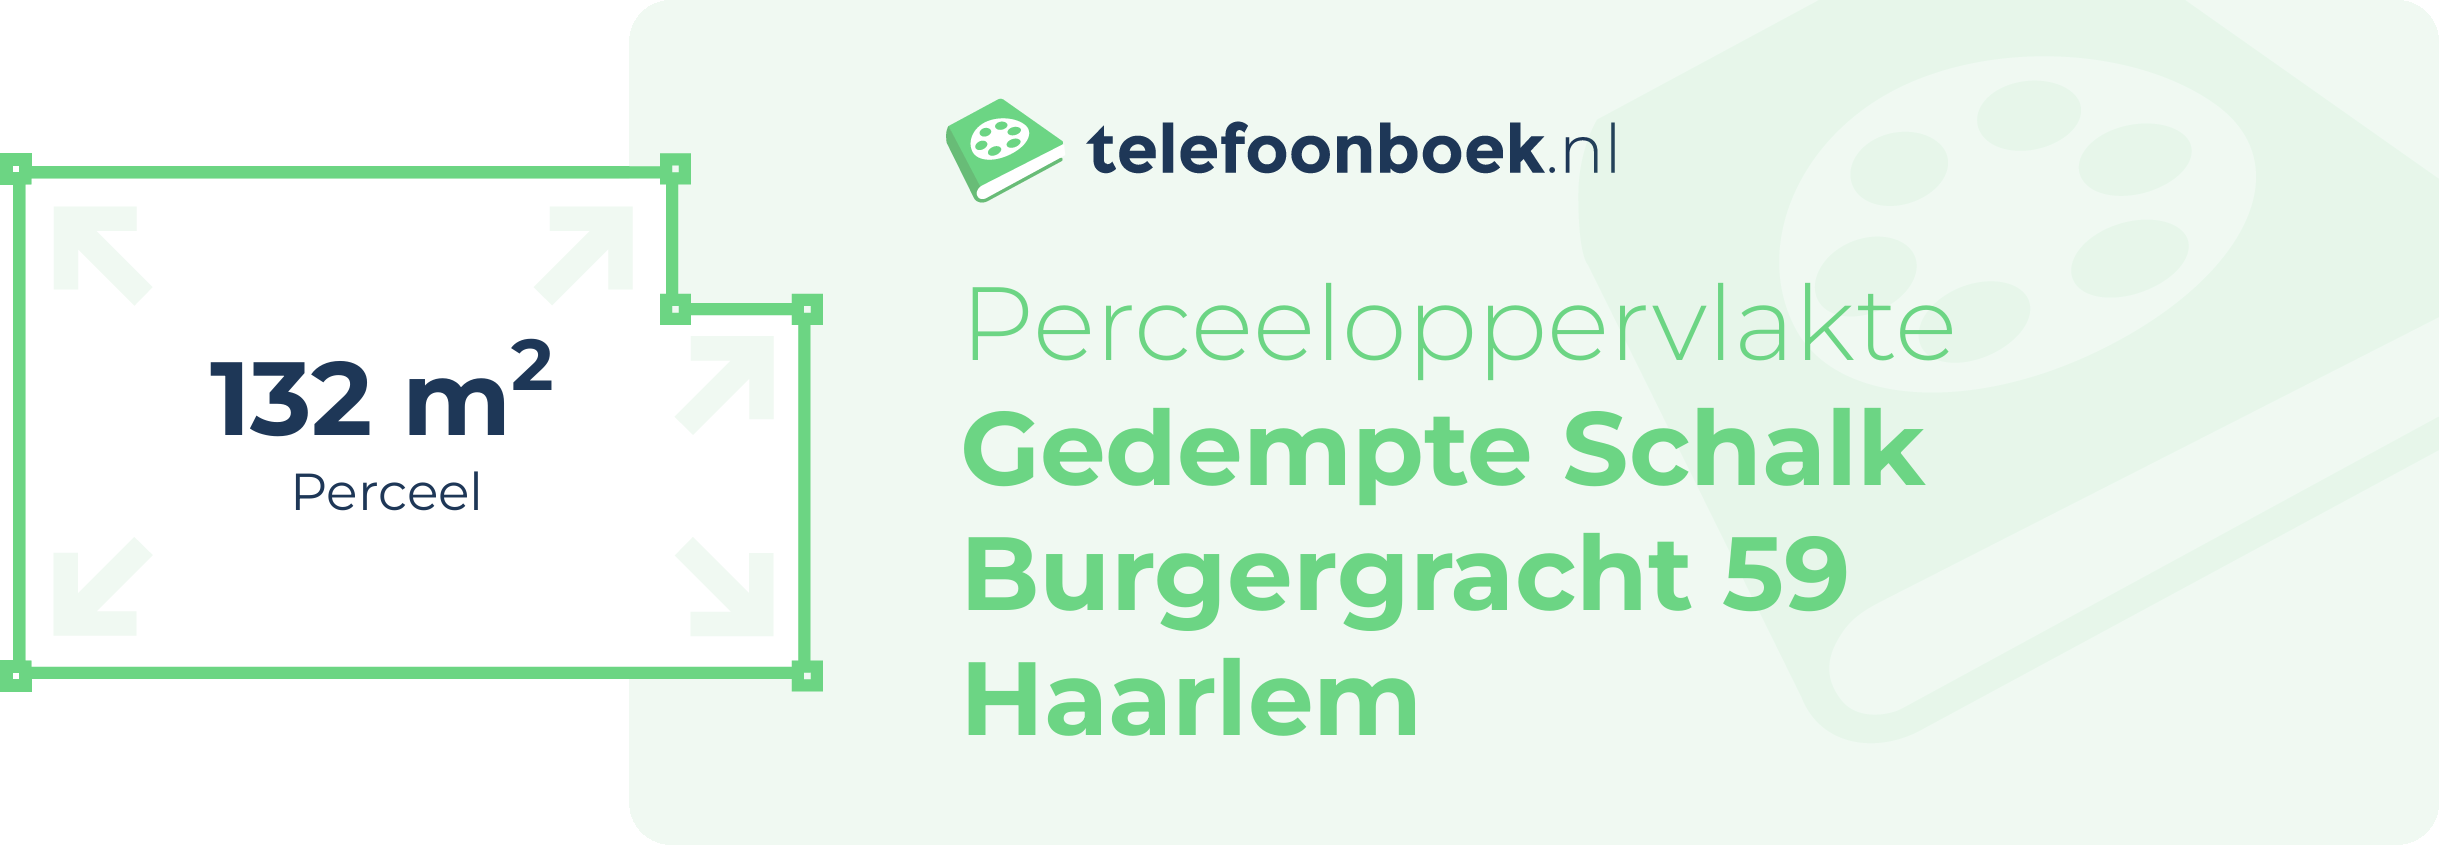 Perceeloppervlakte Gedempte Schalk Burgergracht 59 Haarlem